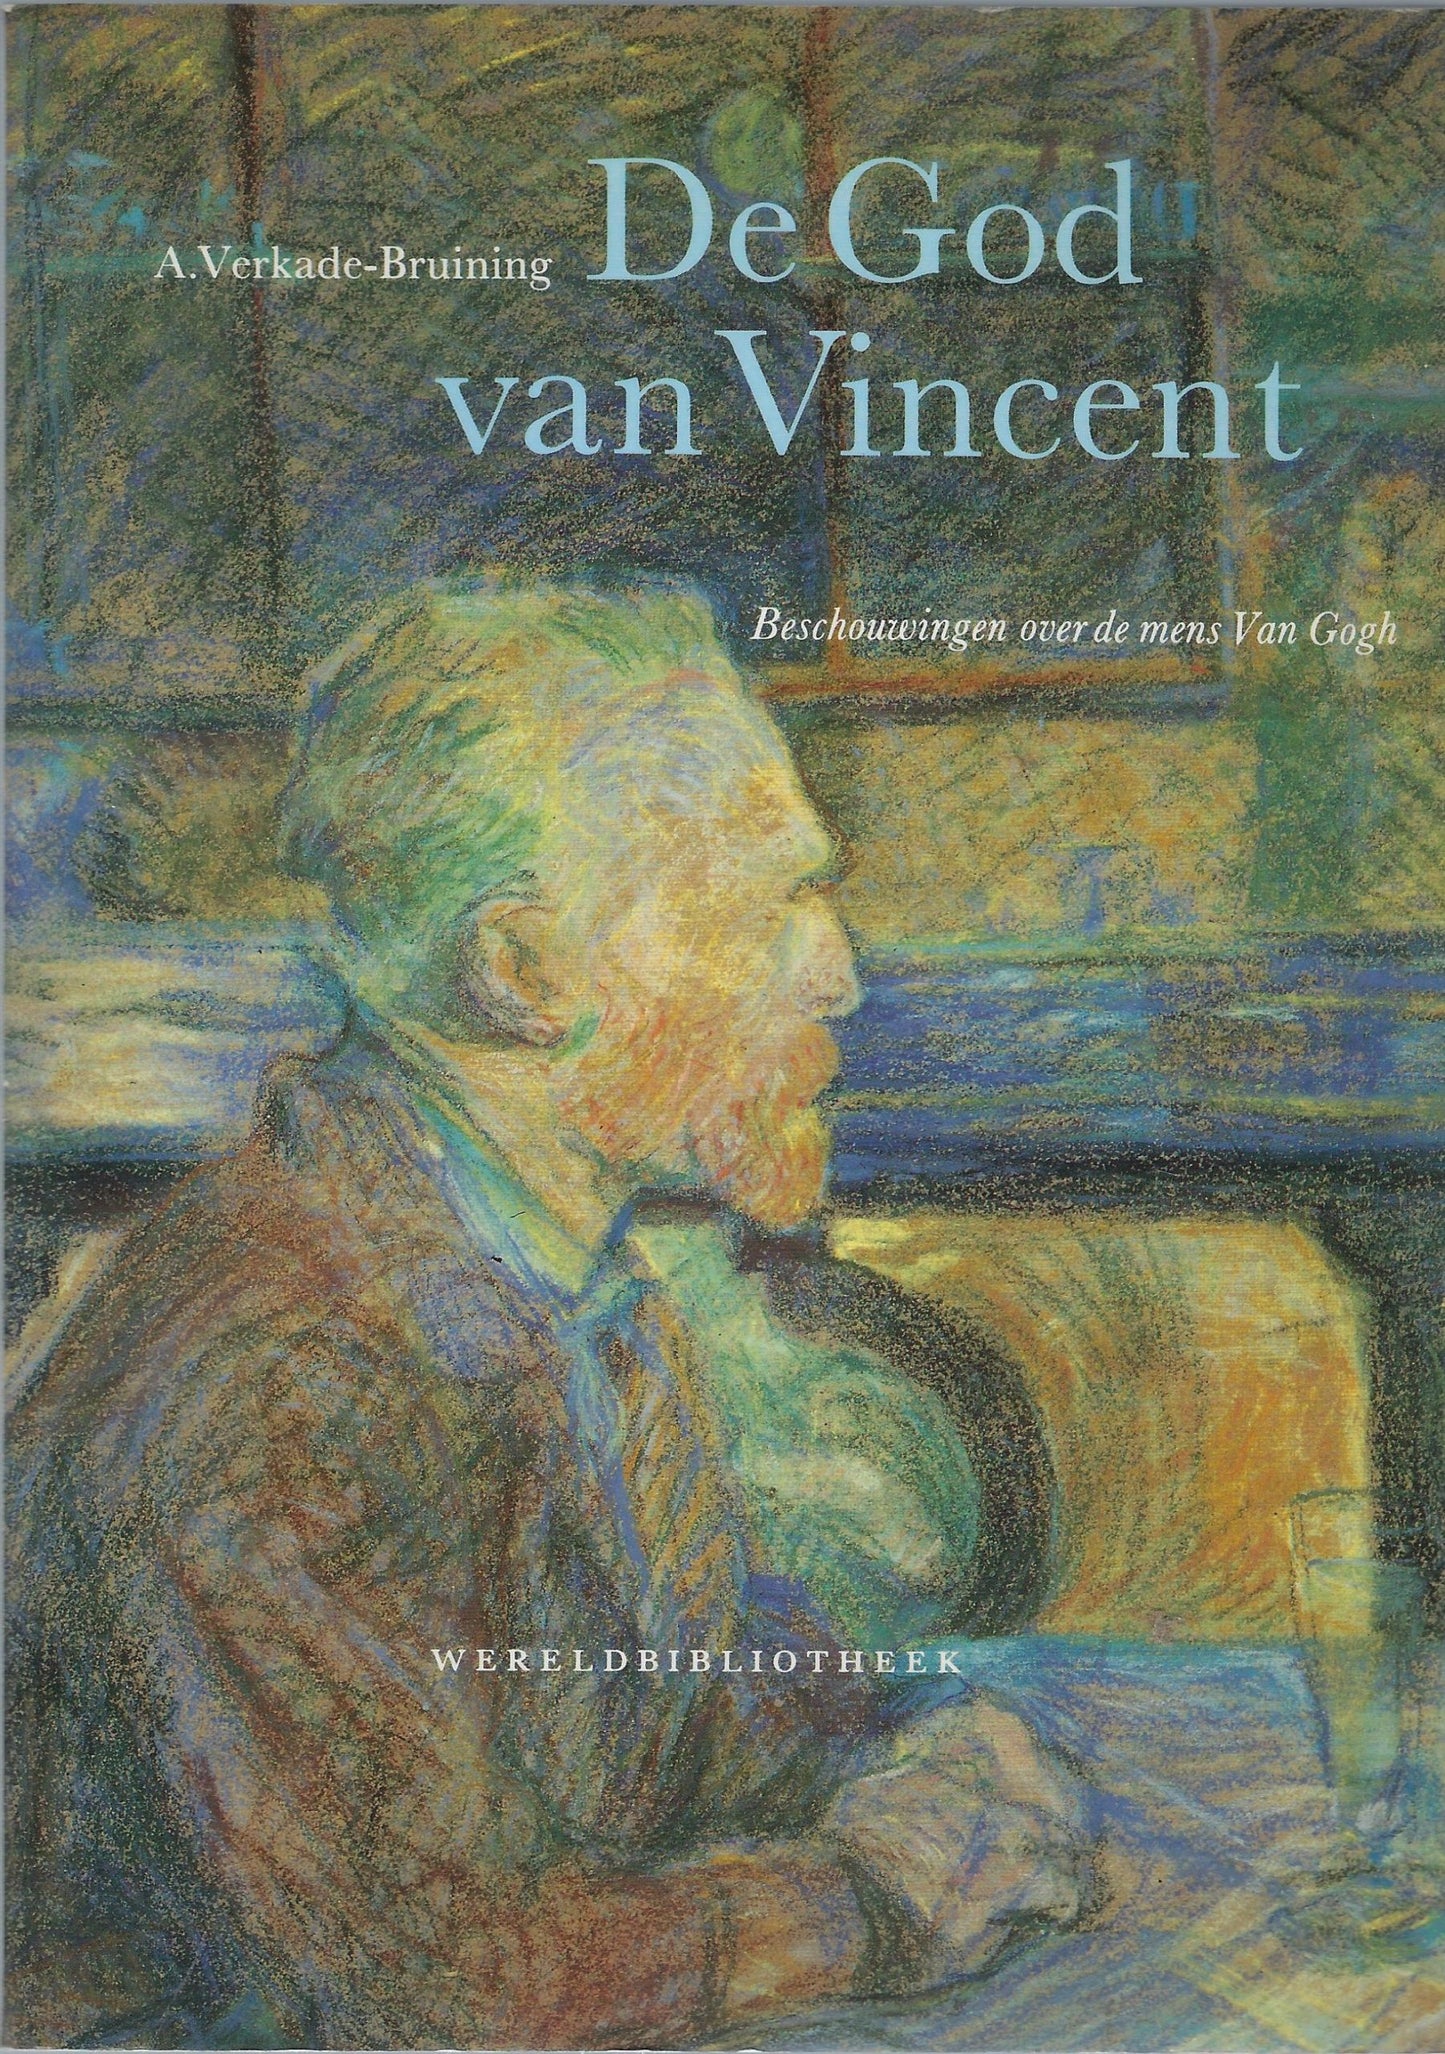 God van Vincent, beschouwingen over de mens van Gogh